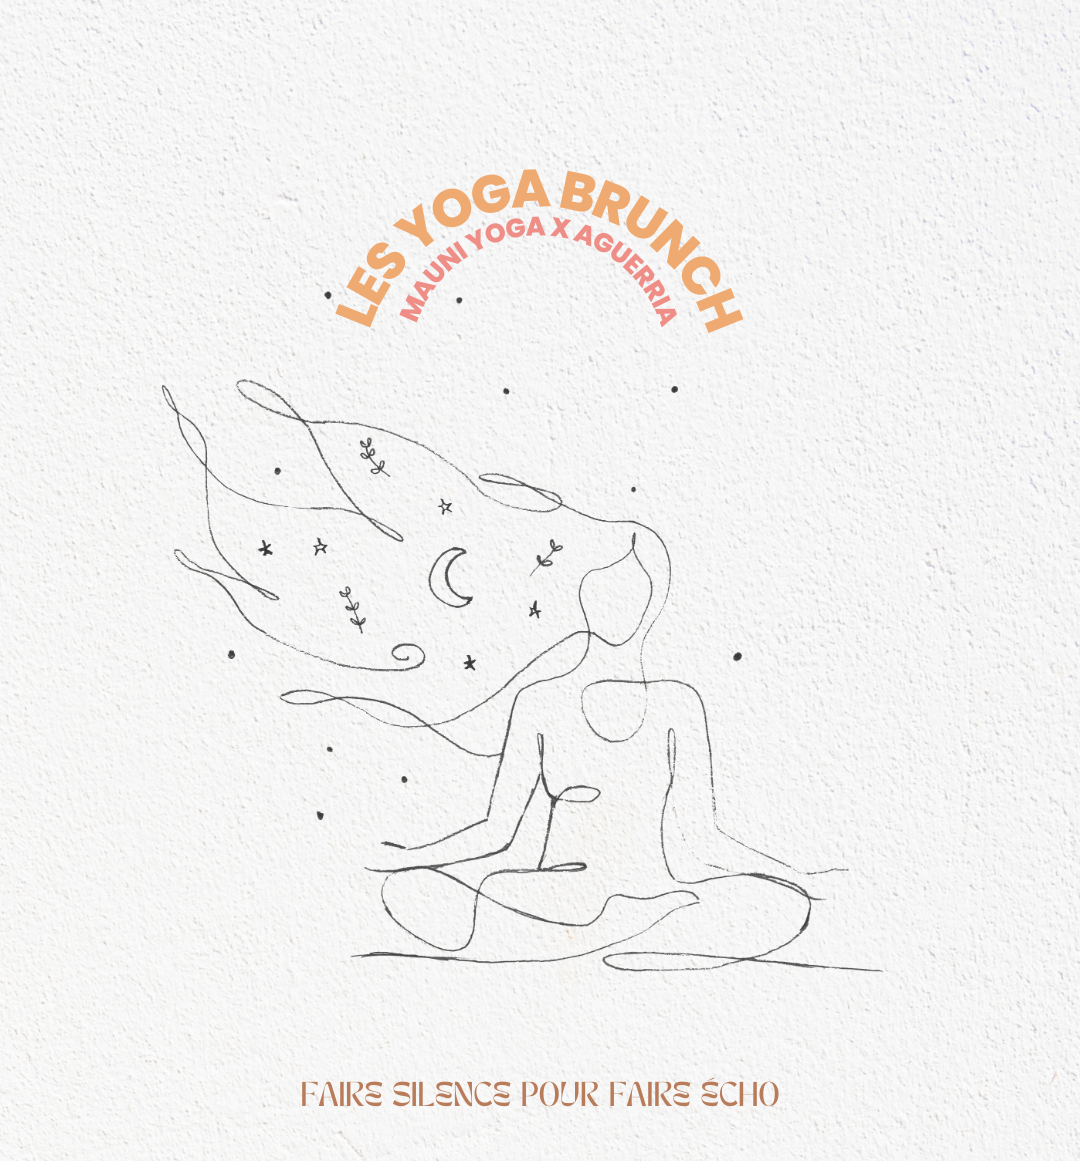 Yoga Brunch d’Aguerria – Dimanche 27 août